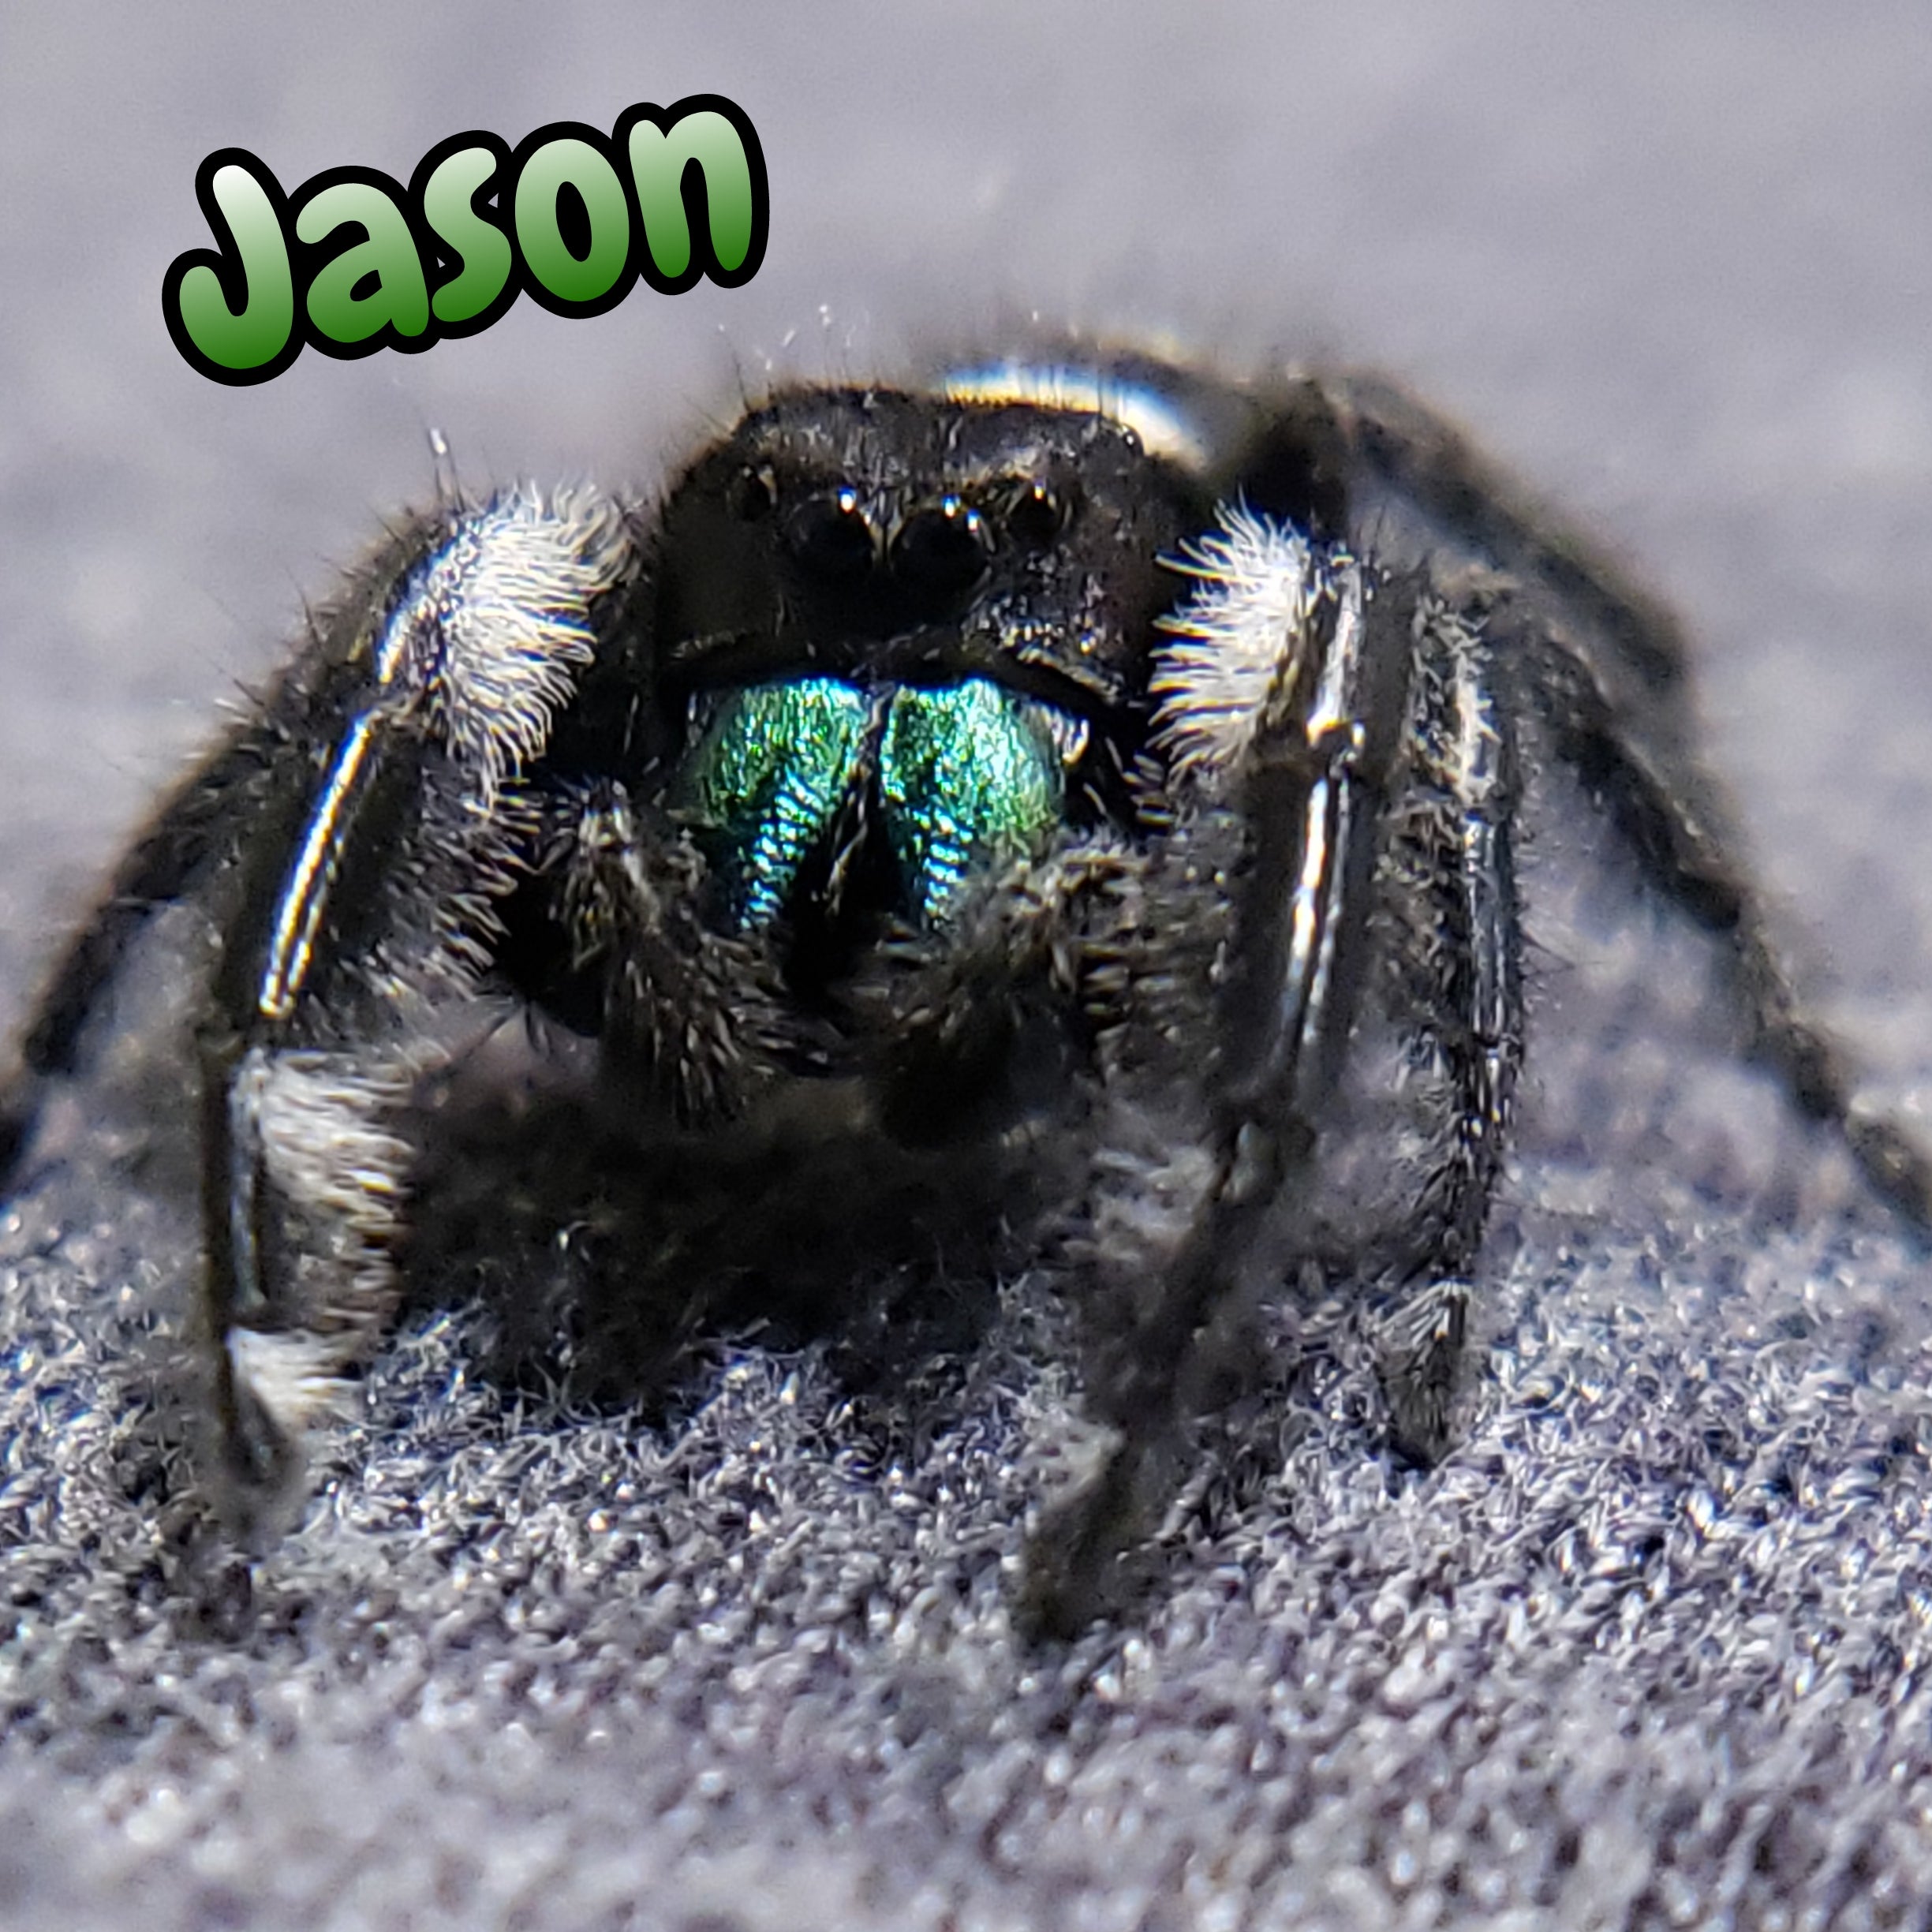 Regal Jumping Spider "Jason"